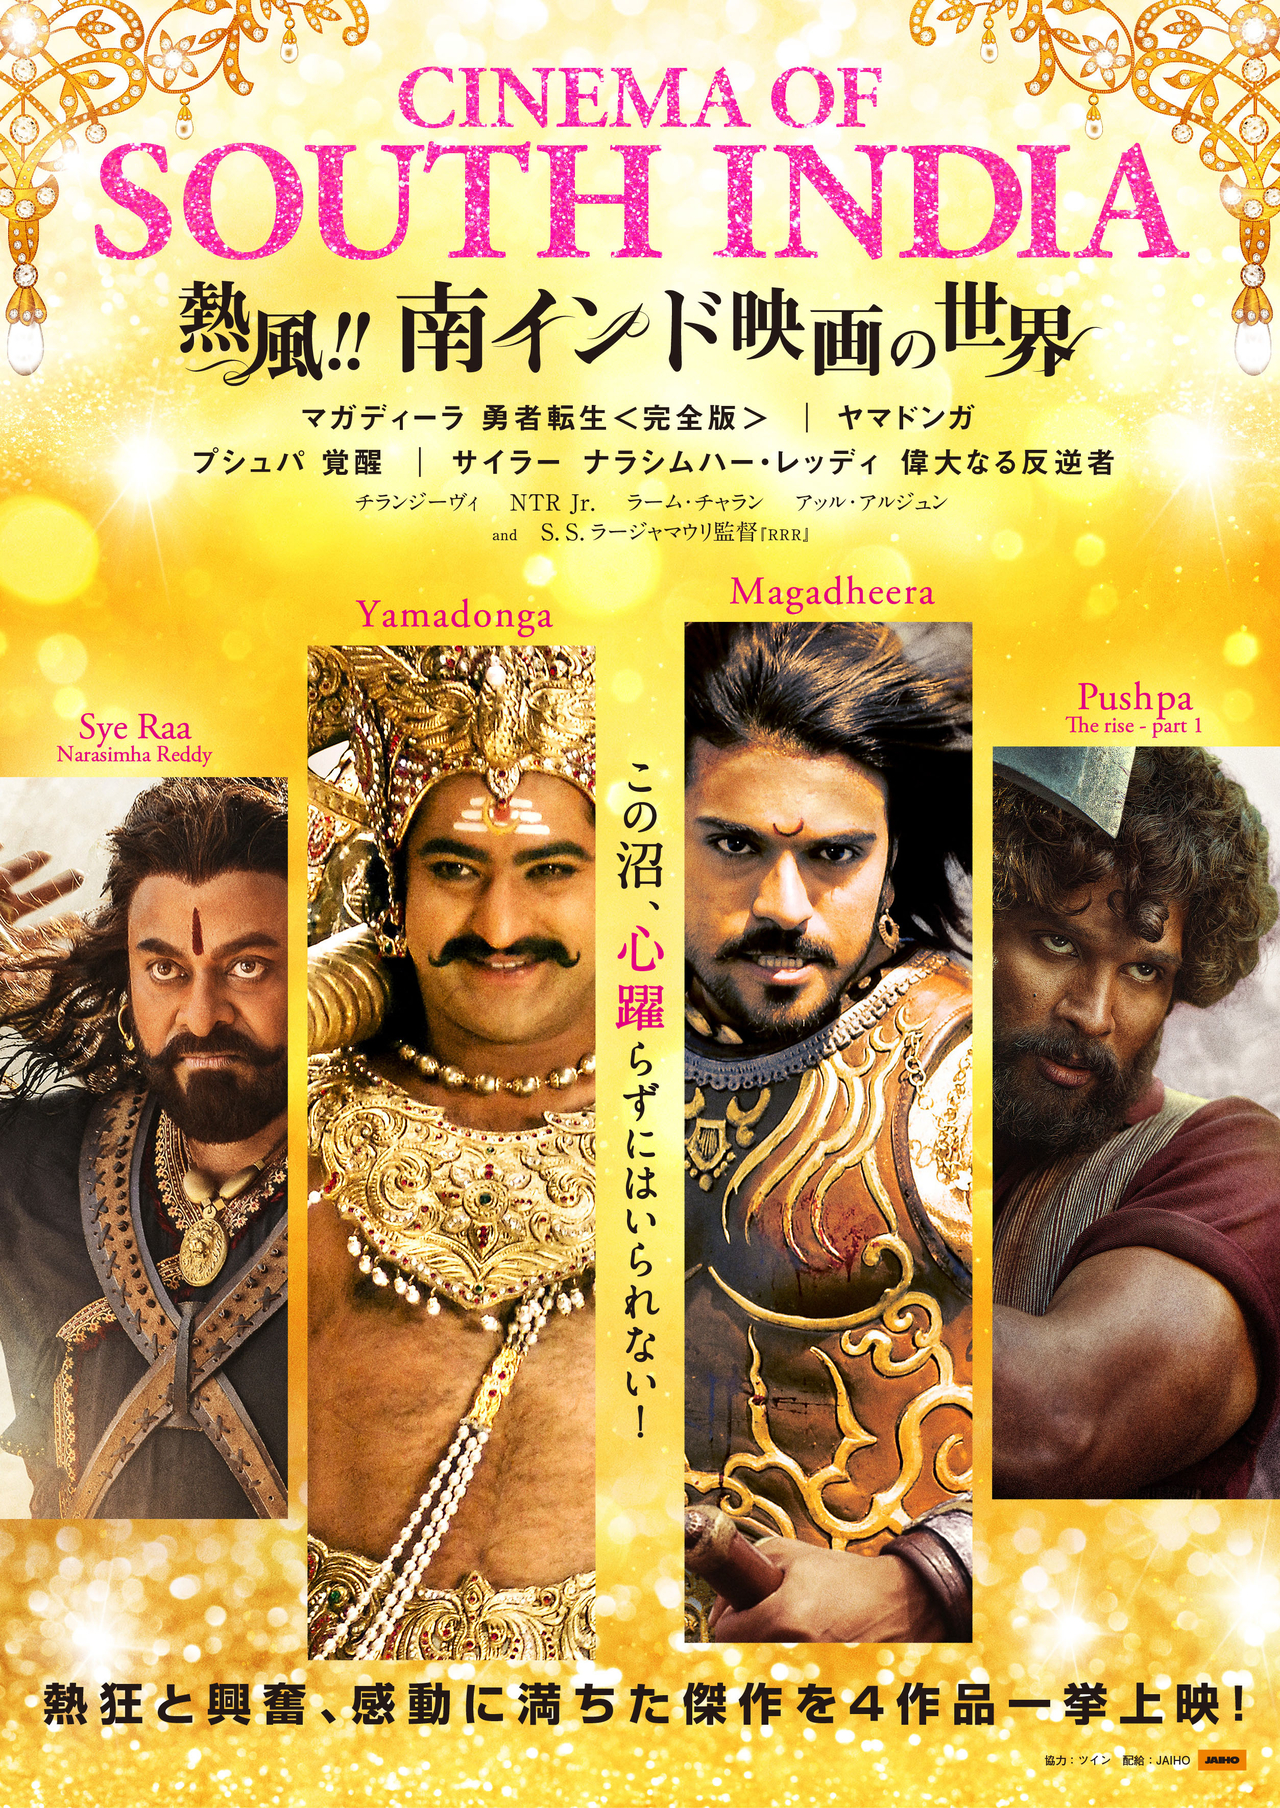 「熱風!!南インド映画の世界」10月20日開催 熱狂と興奮に満ちた、心躍る傑作4作品を上映